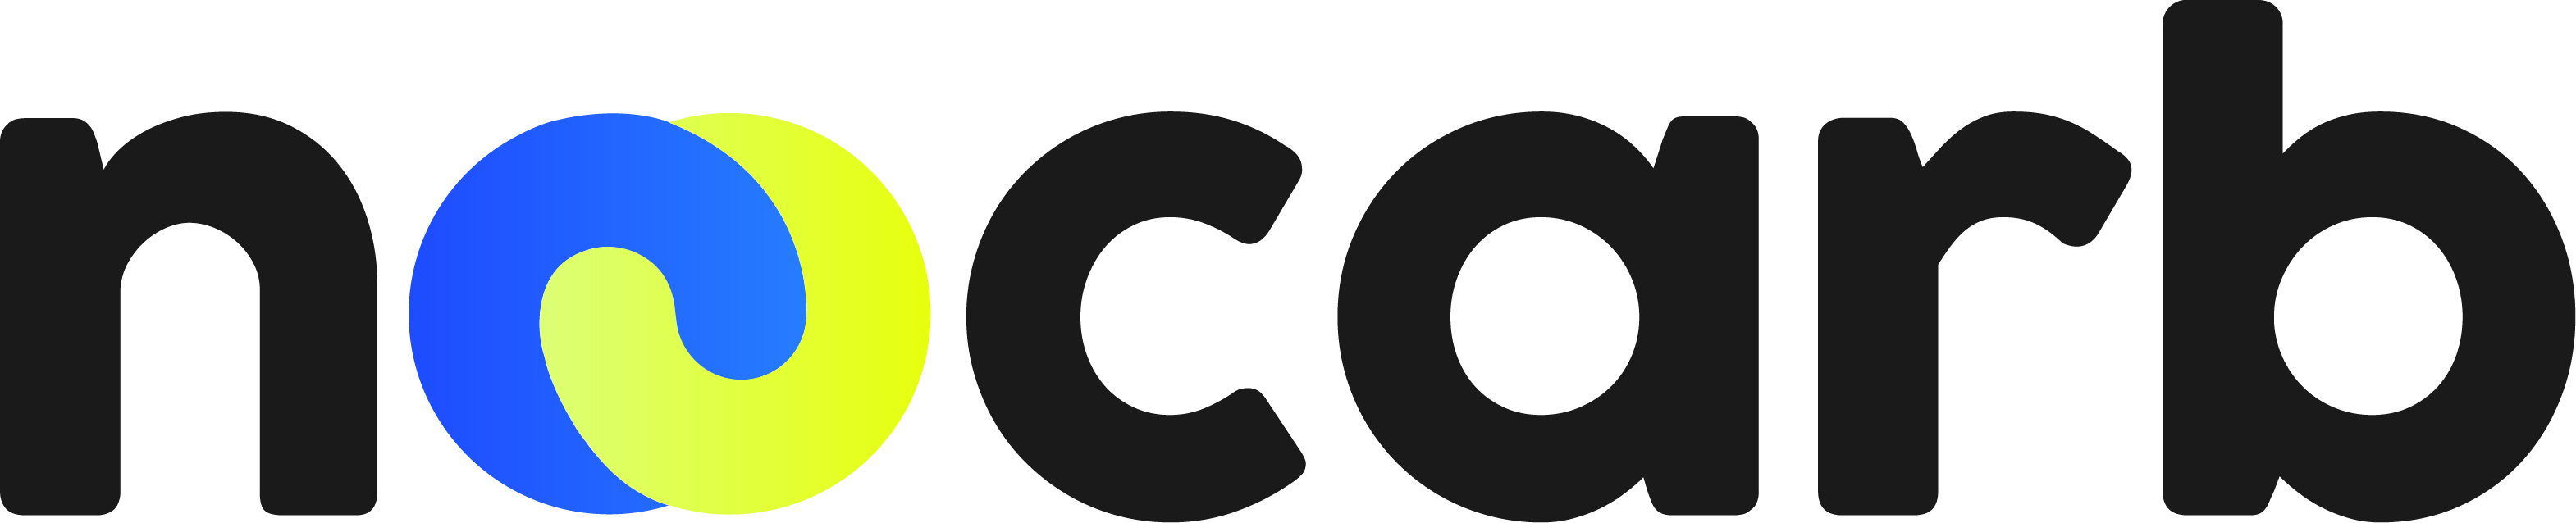 Logo de Noocarb